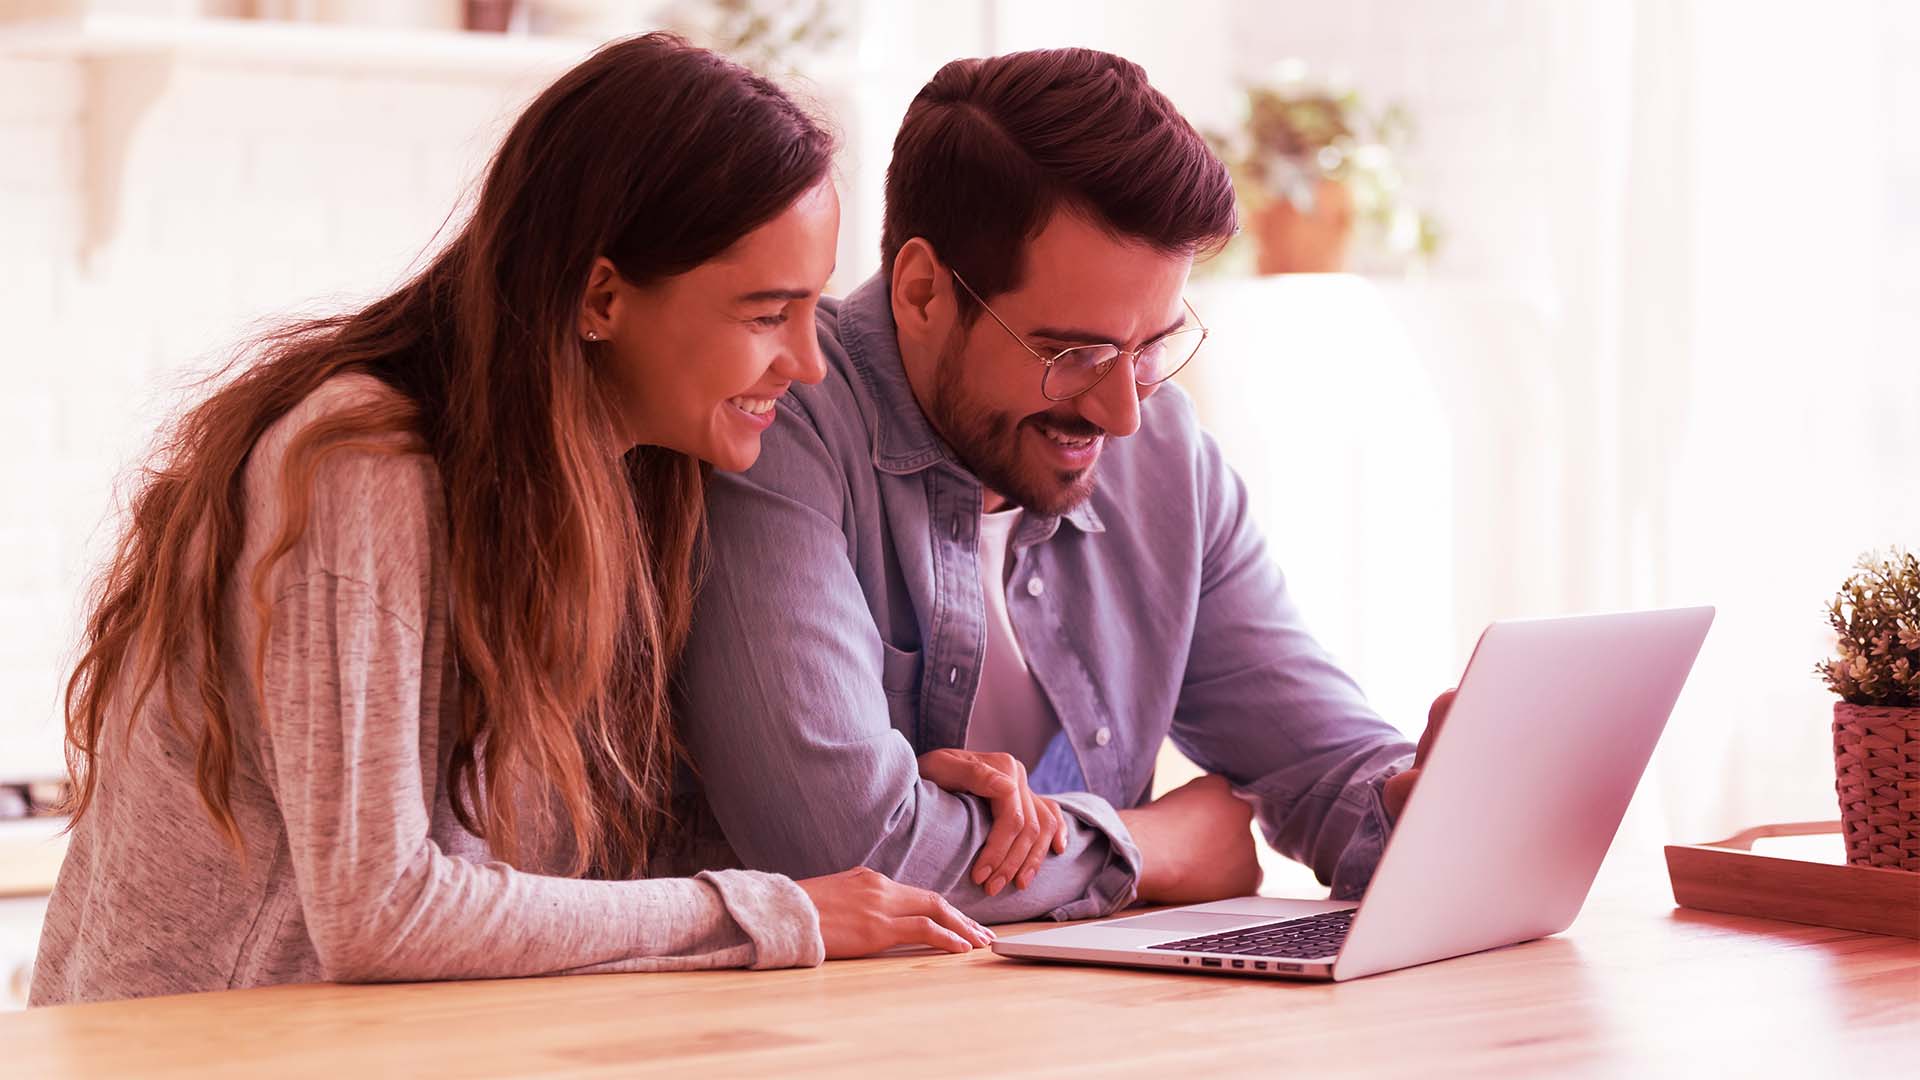 Empréstimo Sim: empresa confiável para crédito rápido
homem e mulher felizes conversando e olhando o computador 